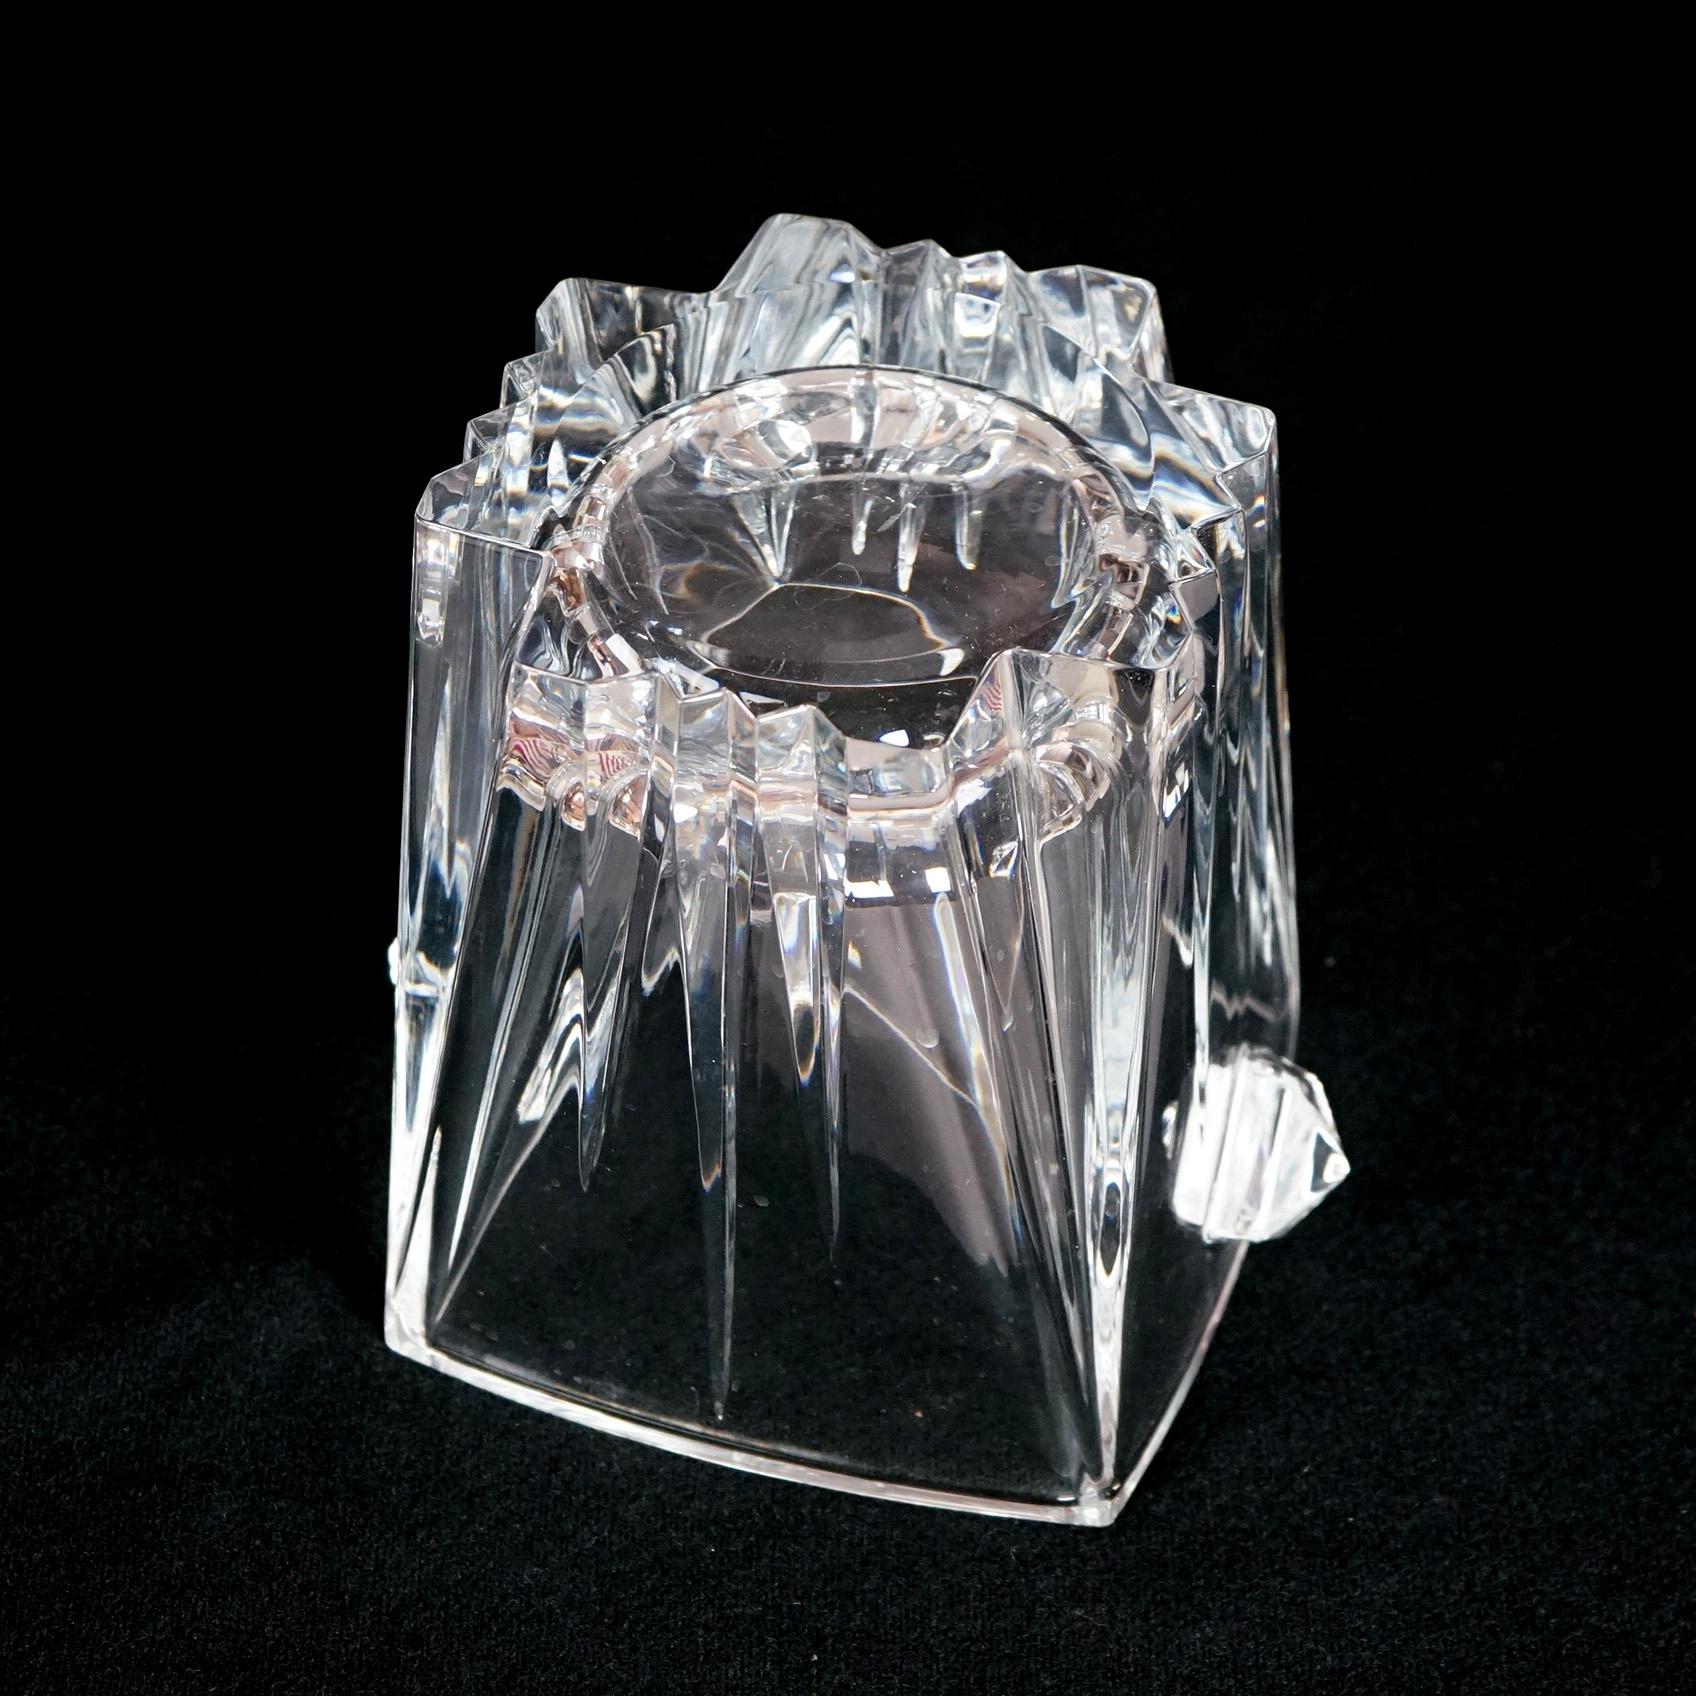 Lenox Ovations Crystal Double Handled Ice Bucket 20thC 9